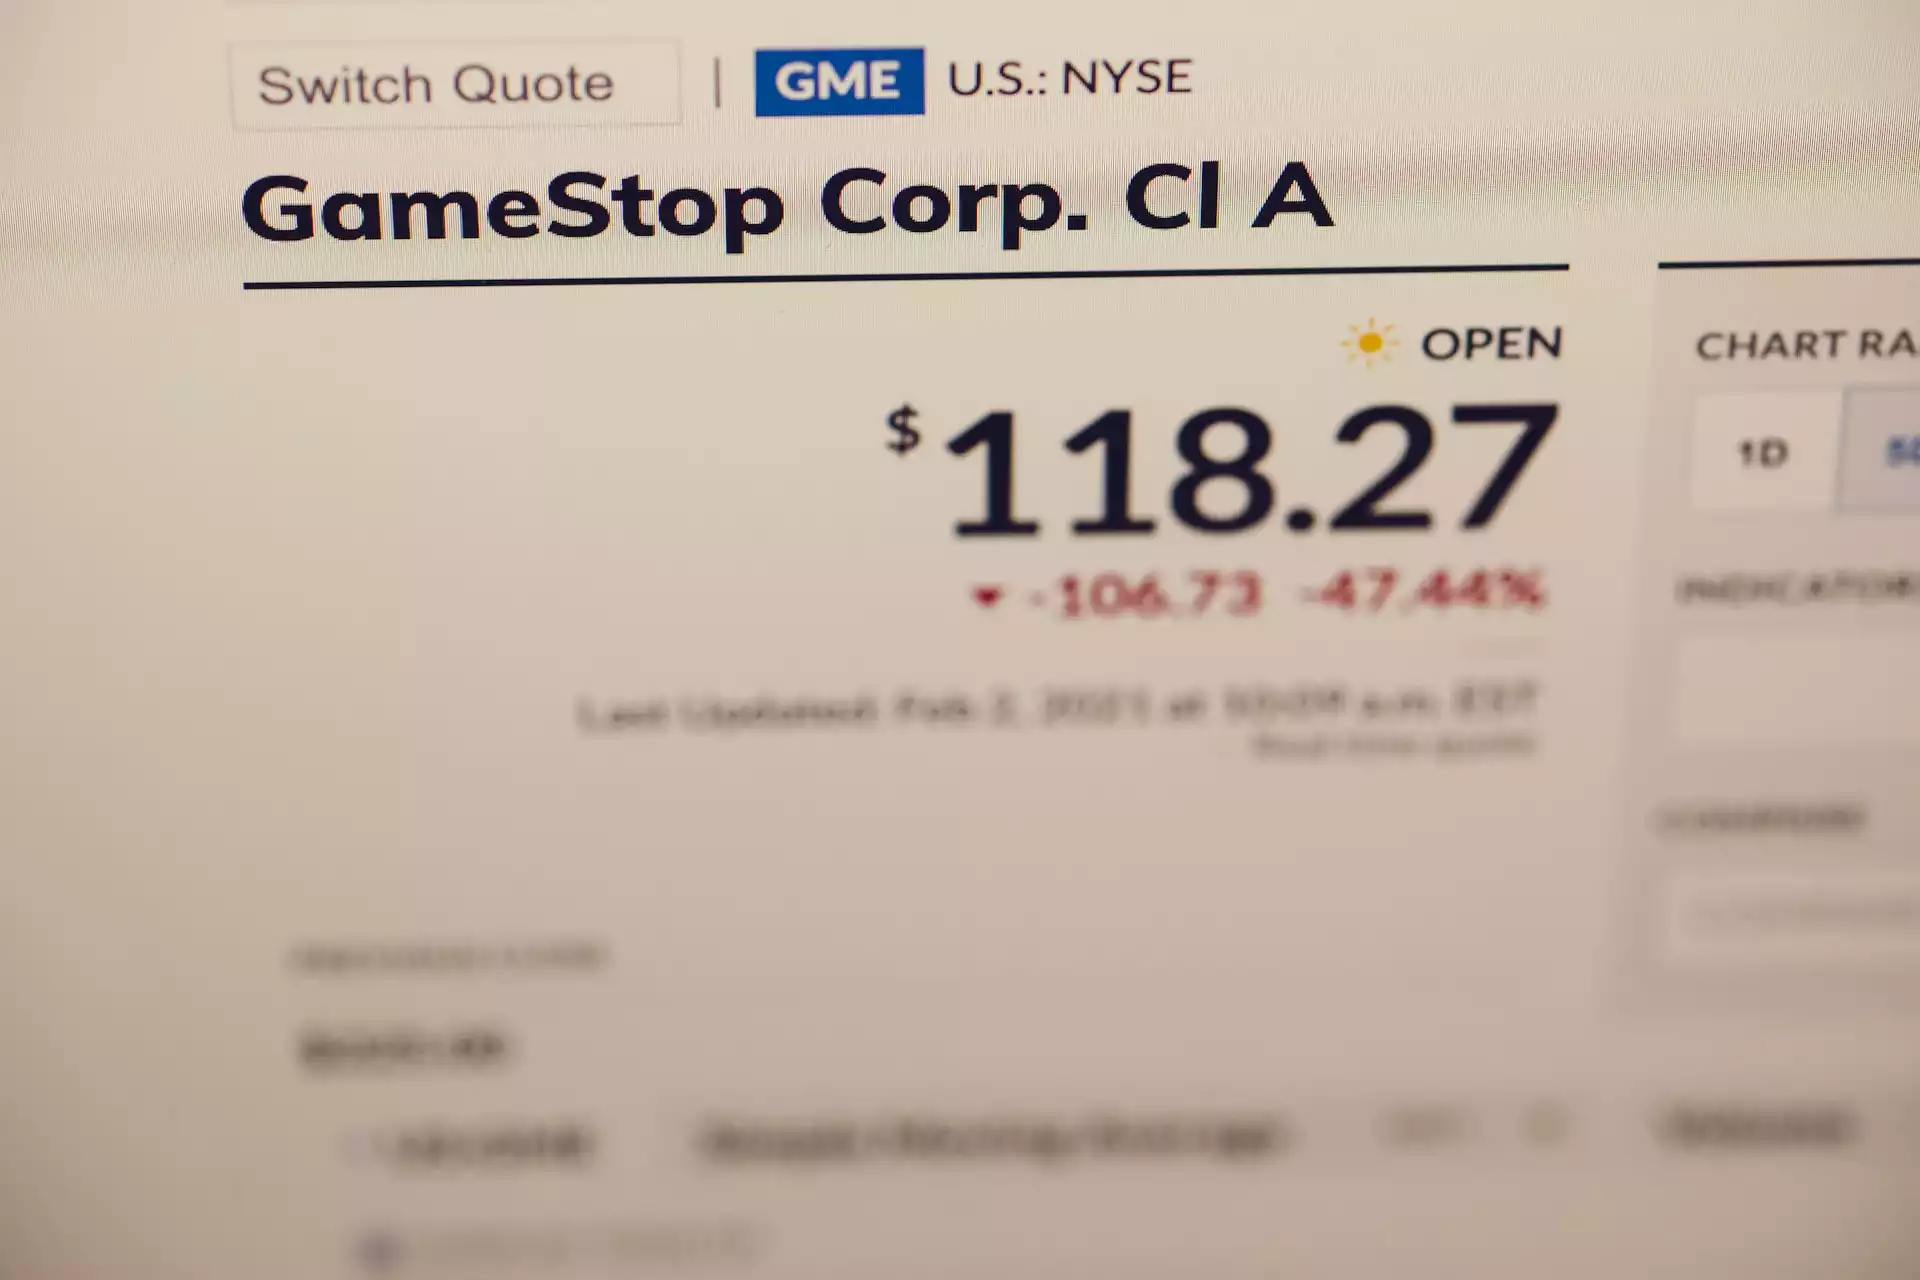 Durch ungedeckte Leerverkäufe (naked short selling) wurden 40 % mehr GameStop-Aktien verkauft als existierten, wodurch der Kurs  ungewöhnliche Bewertungen erhielt